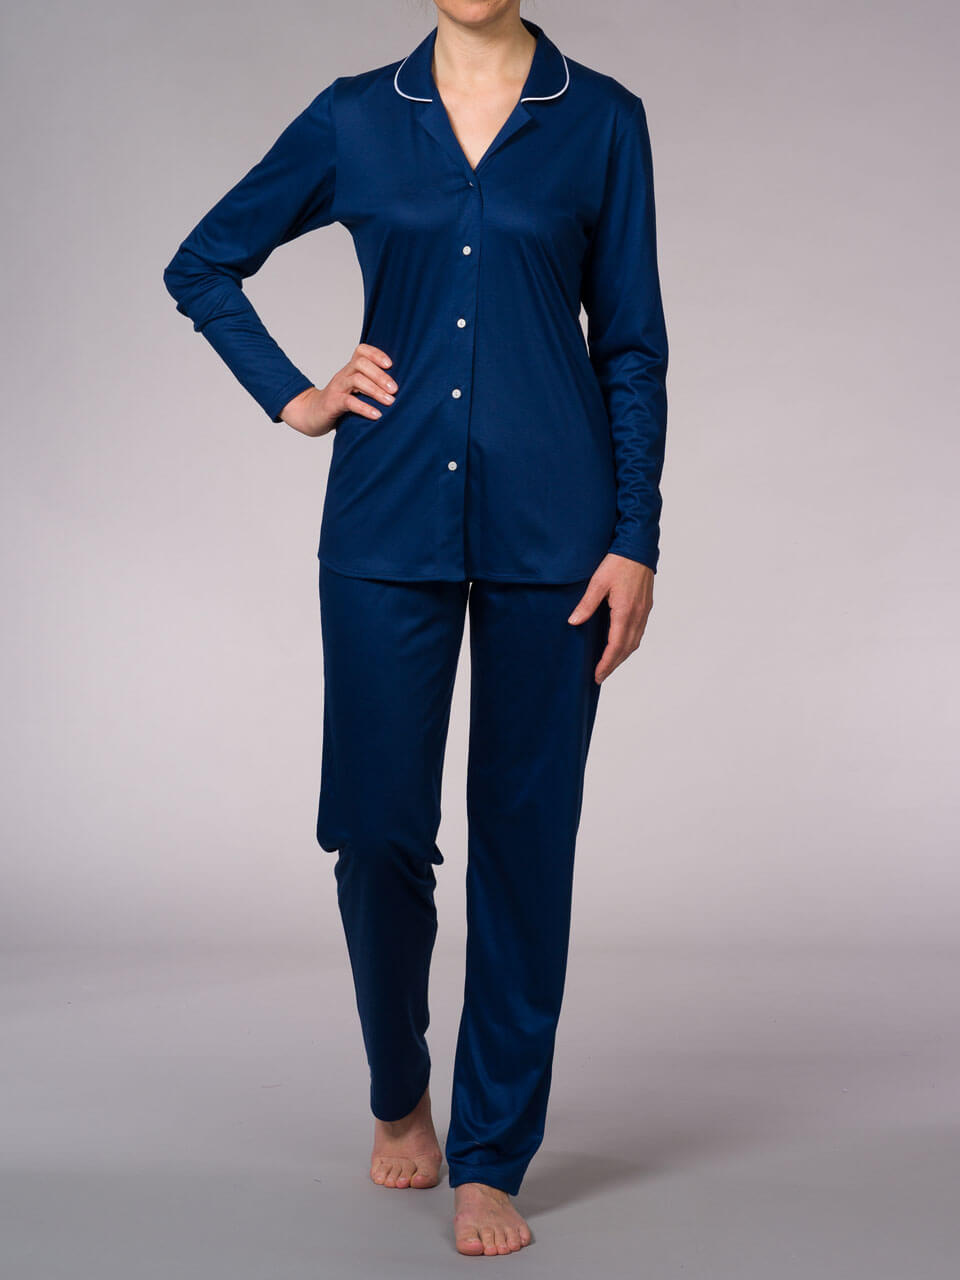 Novila   Novila Damen Schlafanzug   Agneta 8707 Modal mit Seide  Fb.blau